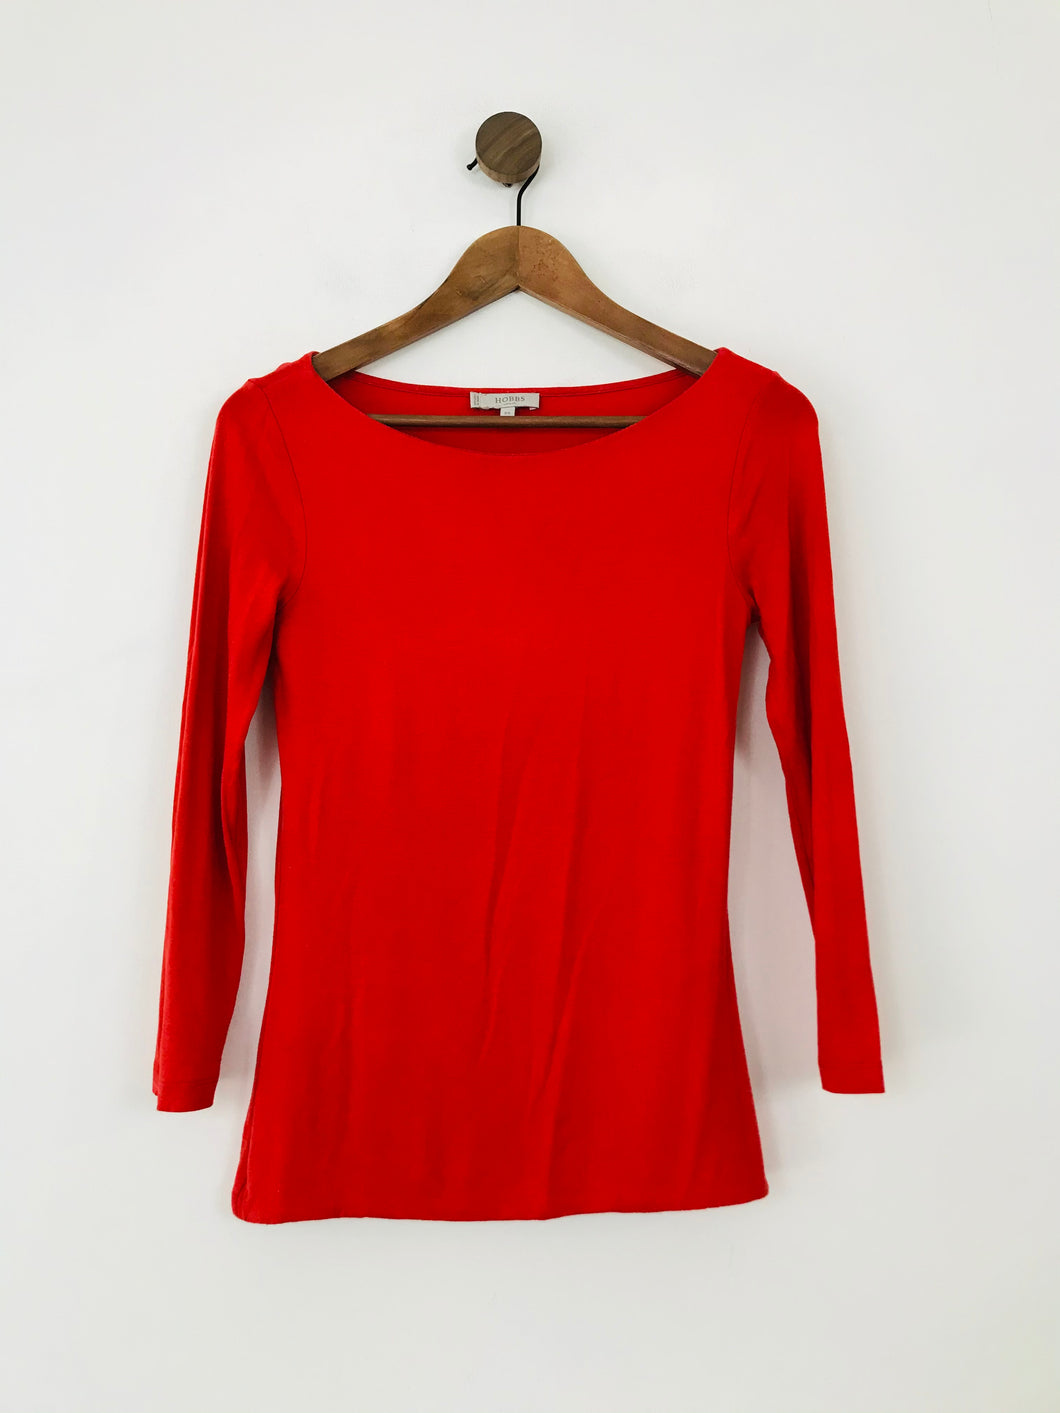 Hobbs Women's 3/4 Sleeve T-Shirt | XS UK6-8 | Red